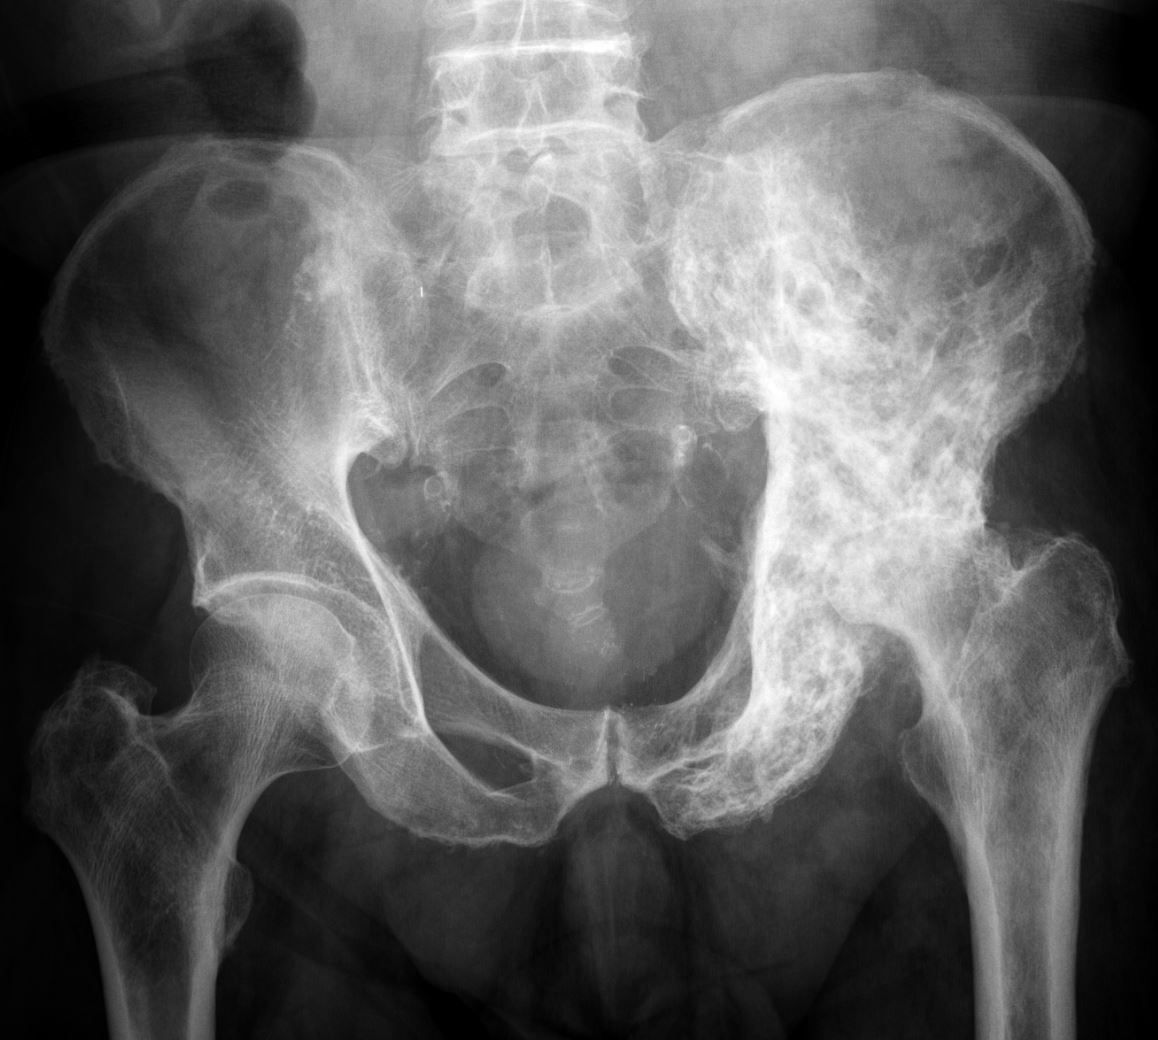 Paget's disease of the pelvis